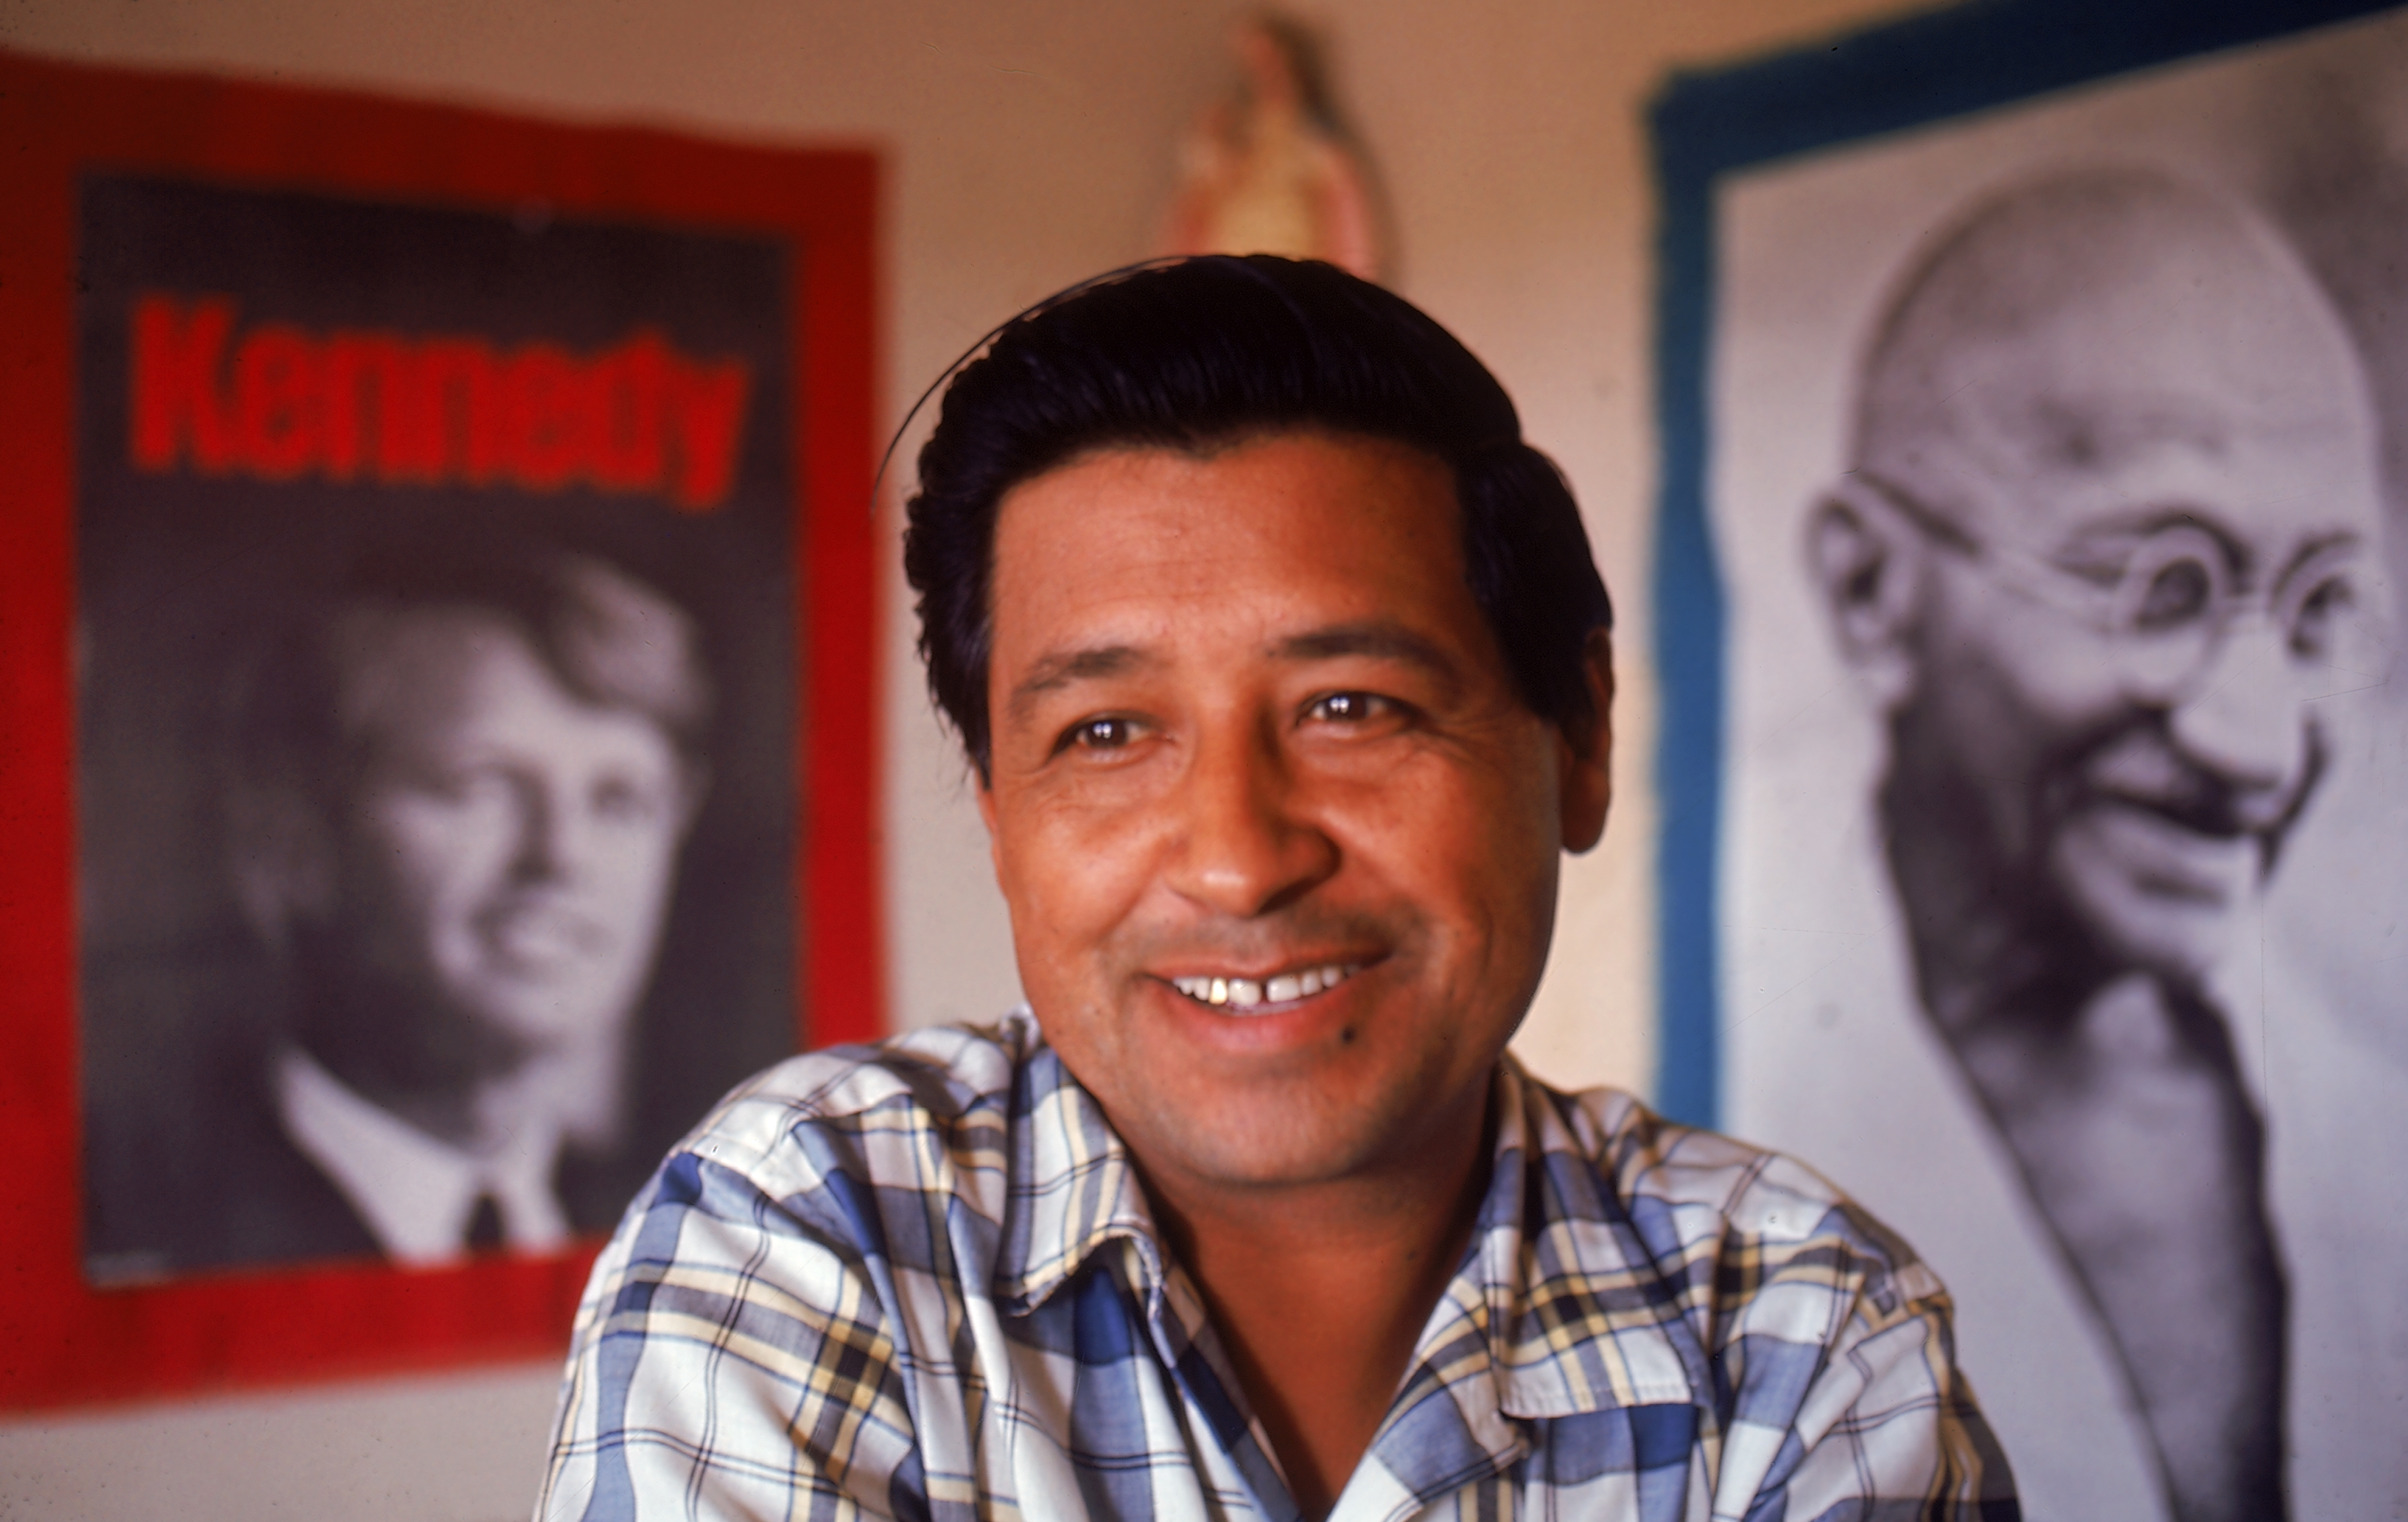 Photos: Cesar Chavez through the years